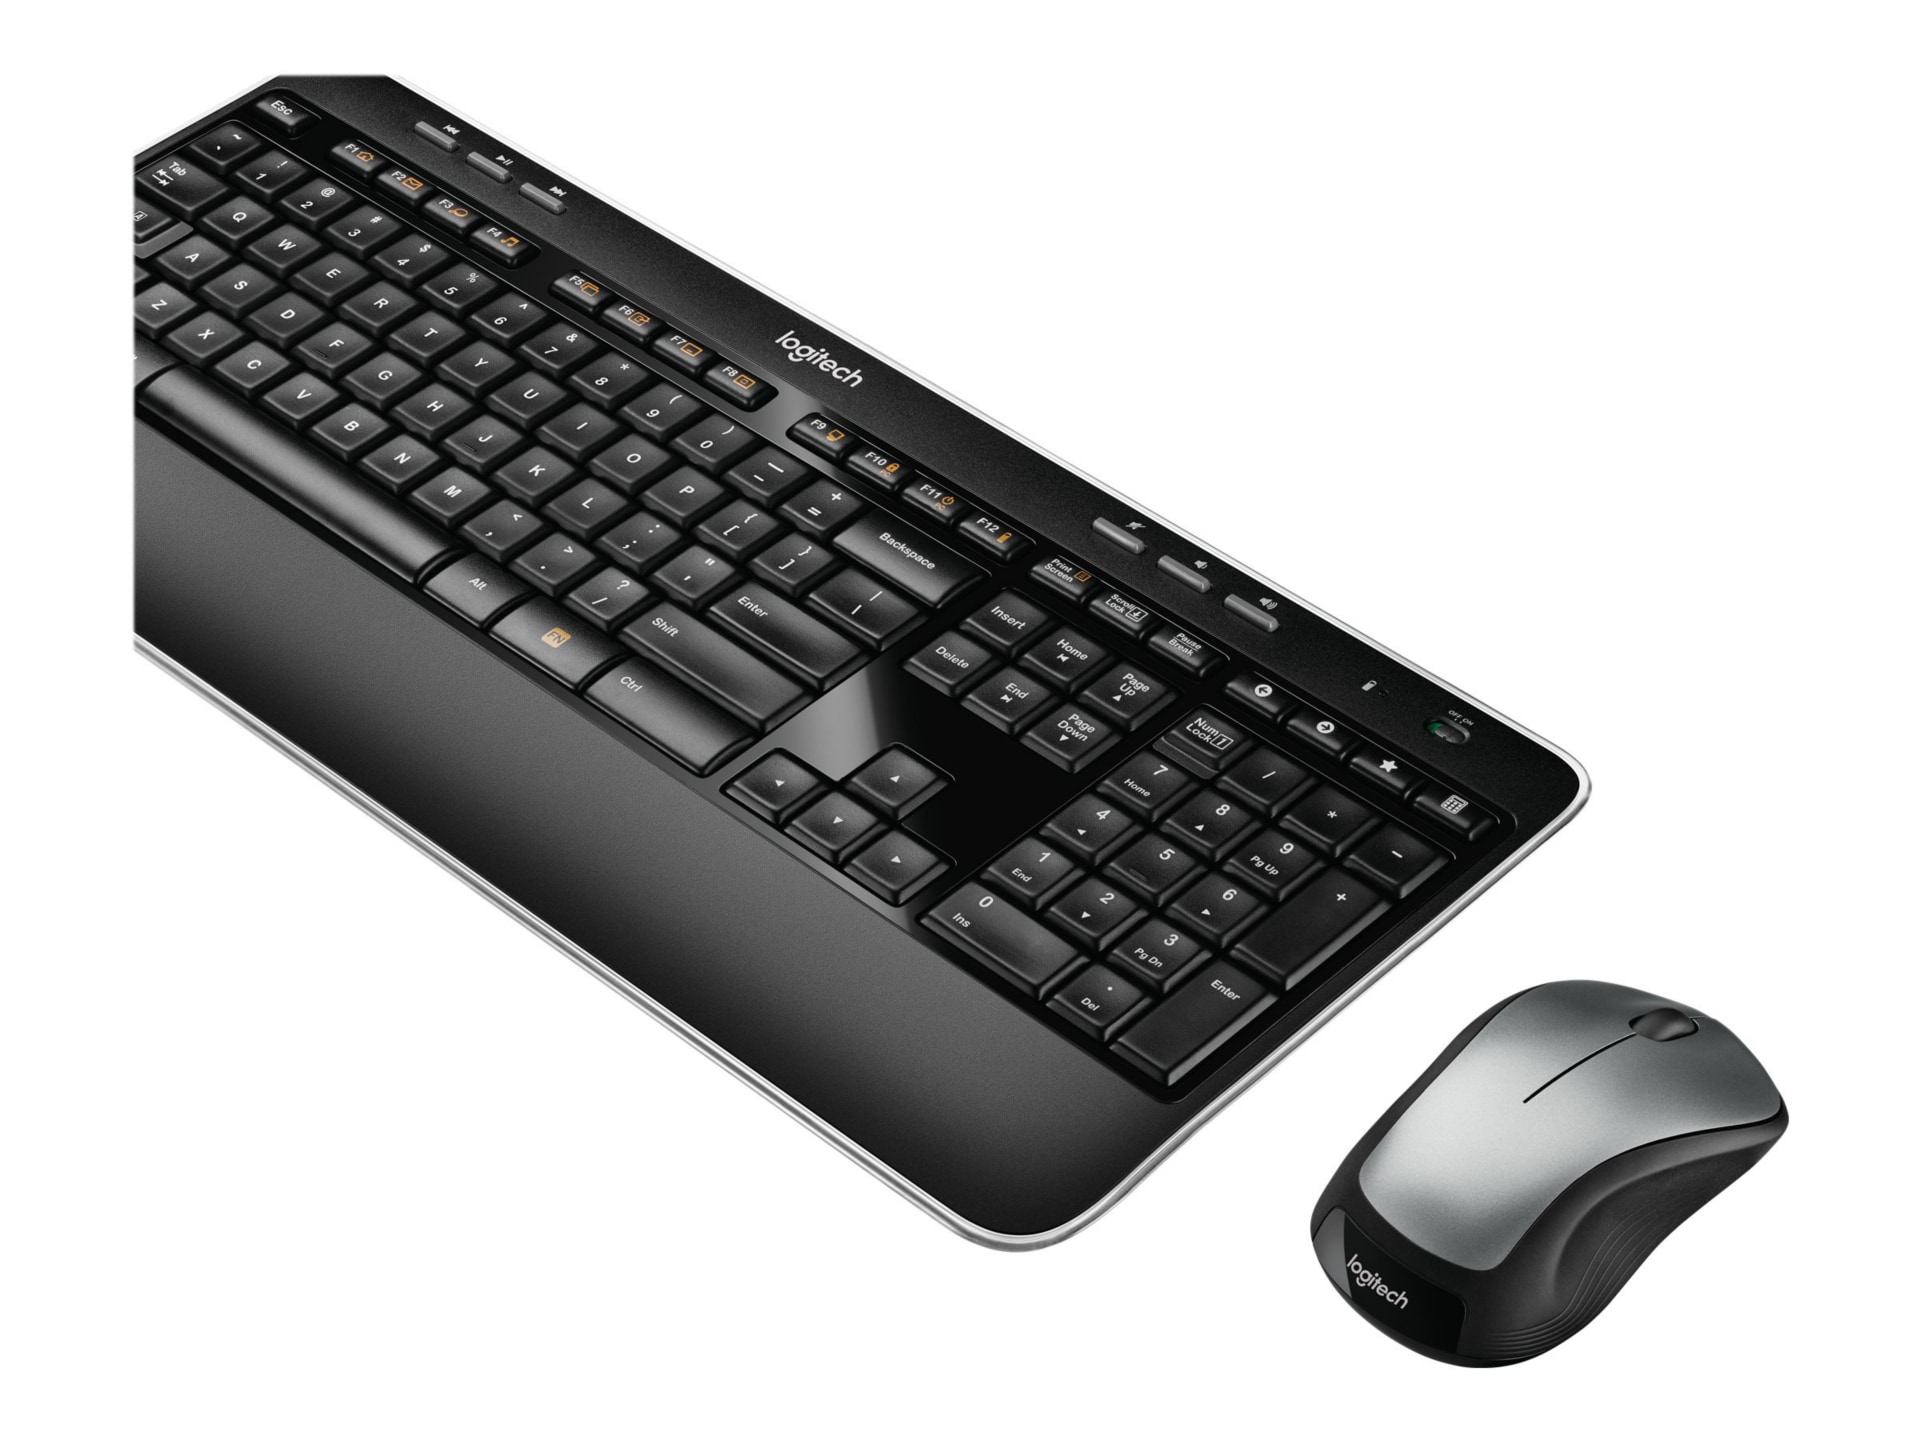 Logitech Wireless Combo MK520 - keyboard and mouse set - US